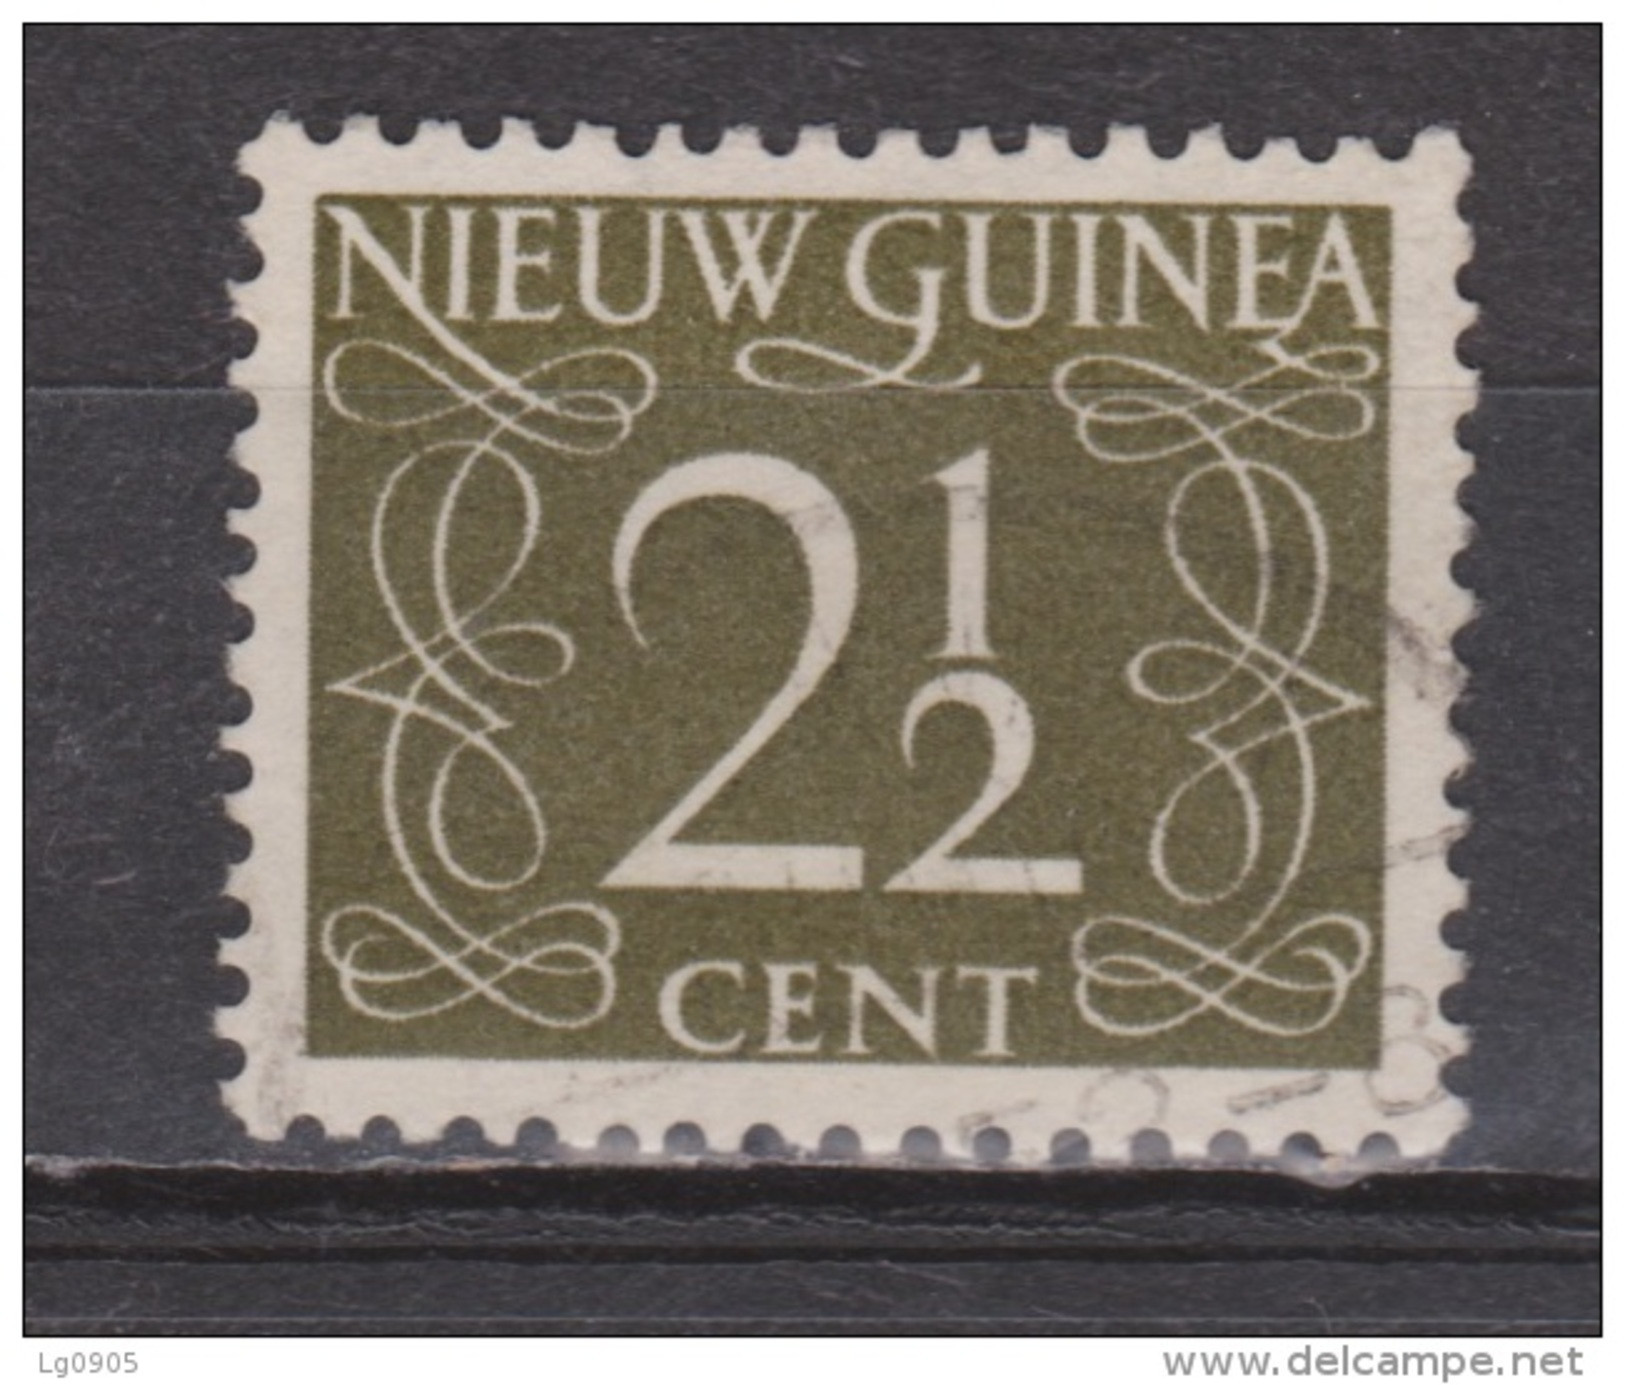 Nederlands Nieuw Guinea 3 Used ; Cijfer 1950 ; NOW ALL STAMPS OF NETHERLANDS NEW GUINEA - Nouvelle Guinée Néerlandaise